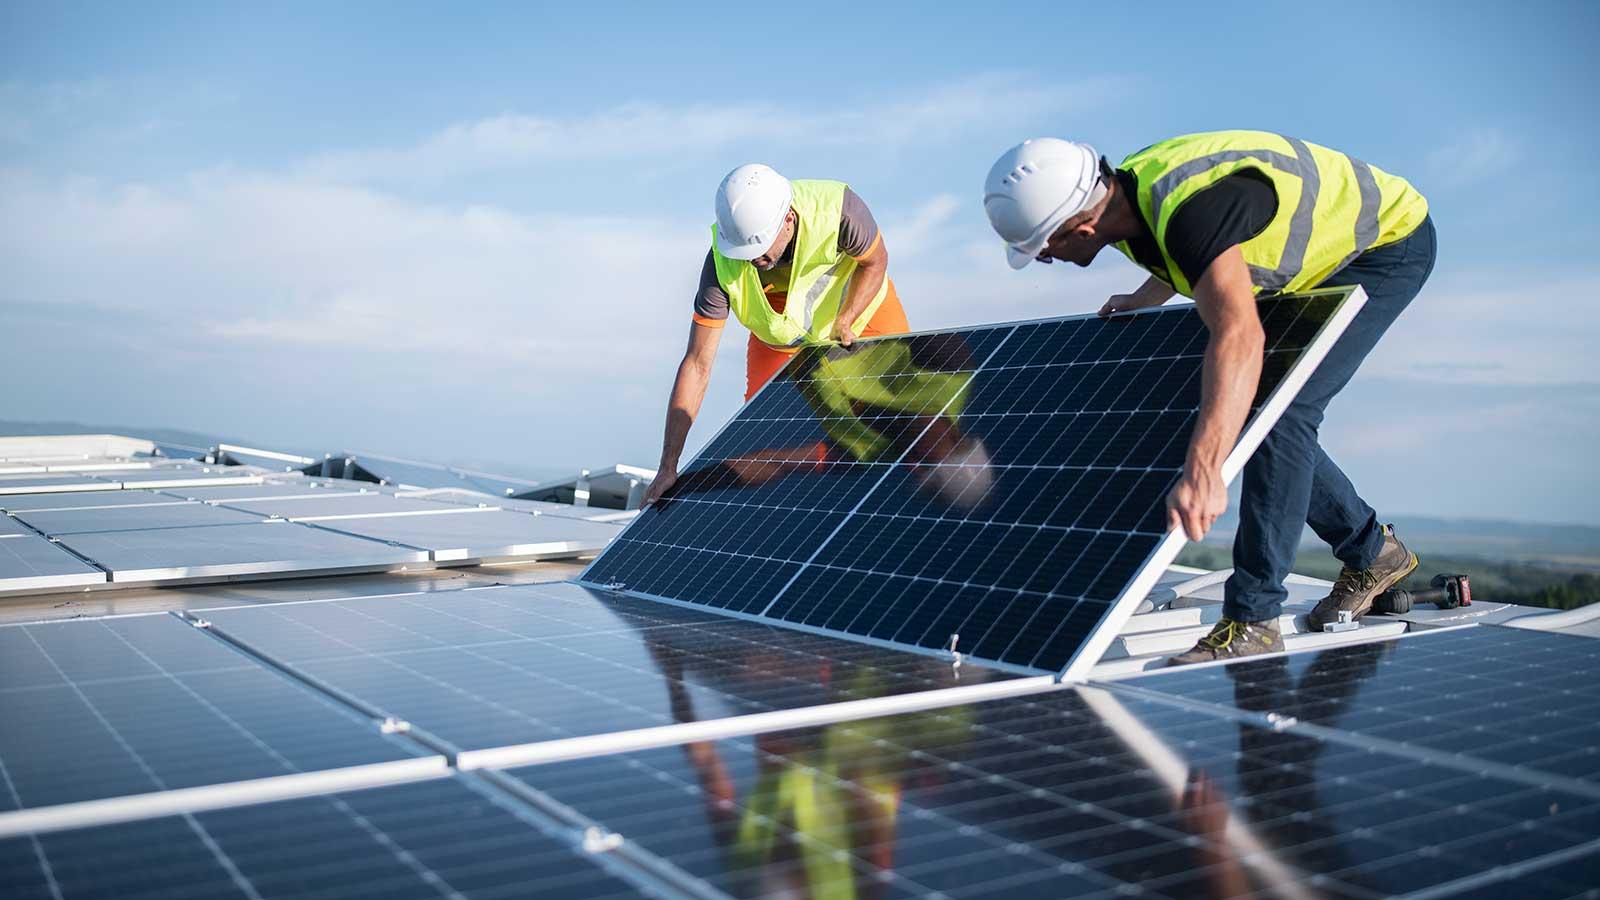 esball国际平台客户端土木环境工程项目工程师安装太阳能电池板